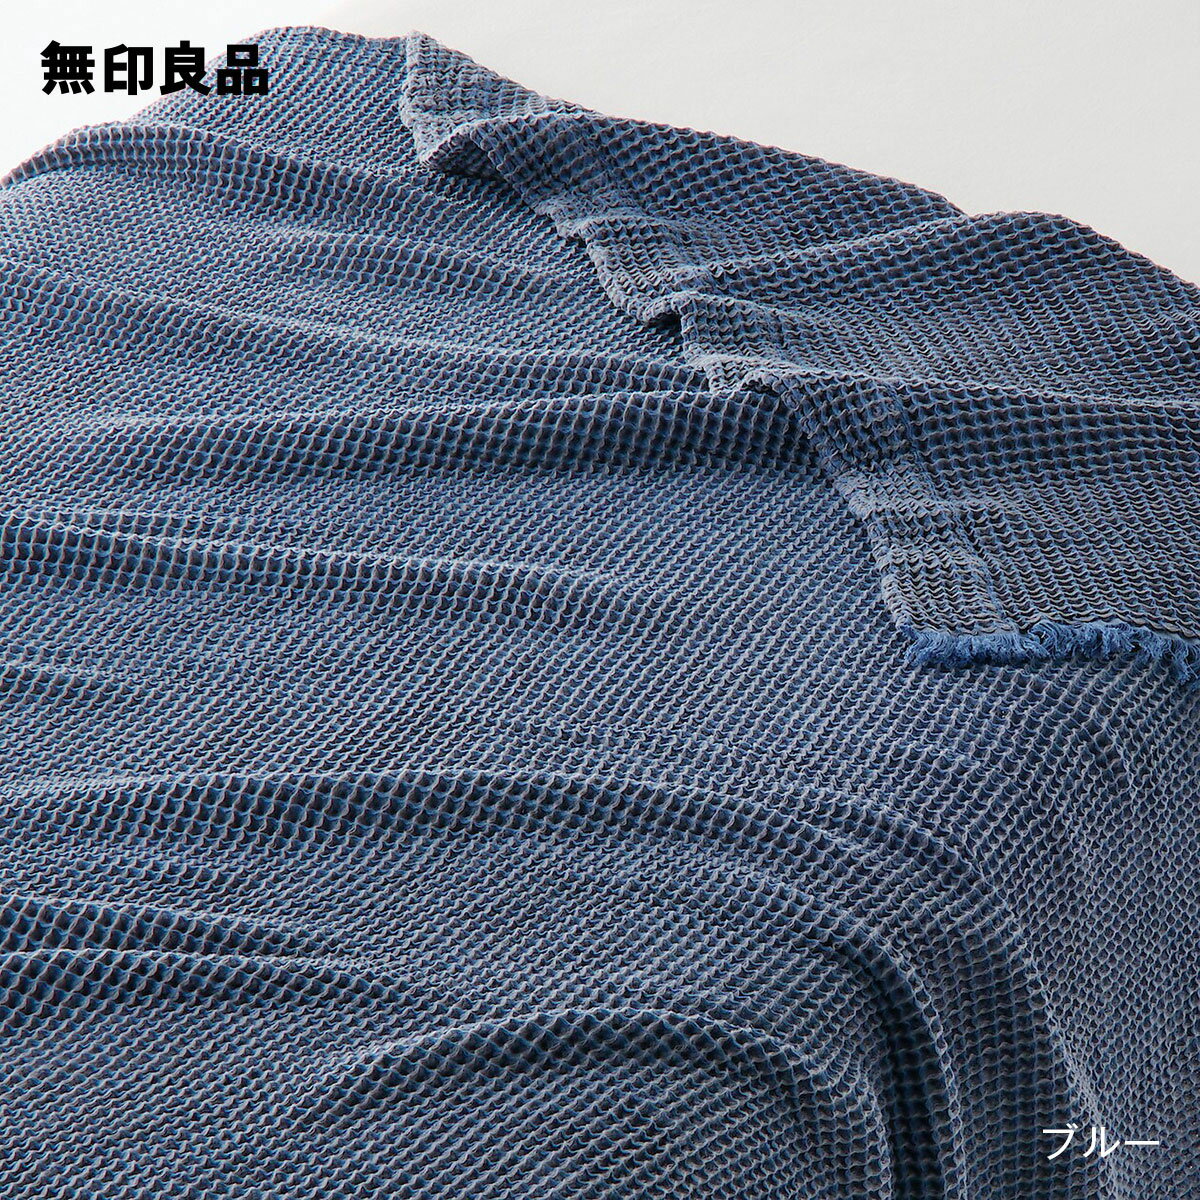 【無印良品 公式】【ダブル】ワッフル織ケット・180×200cm